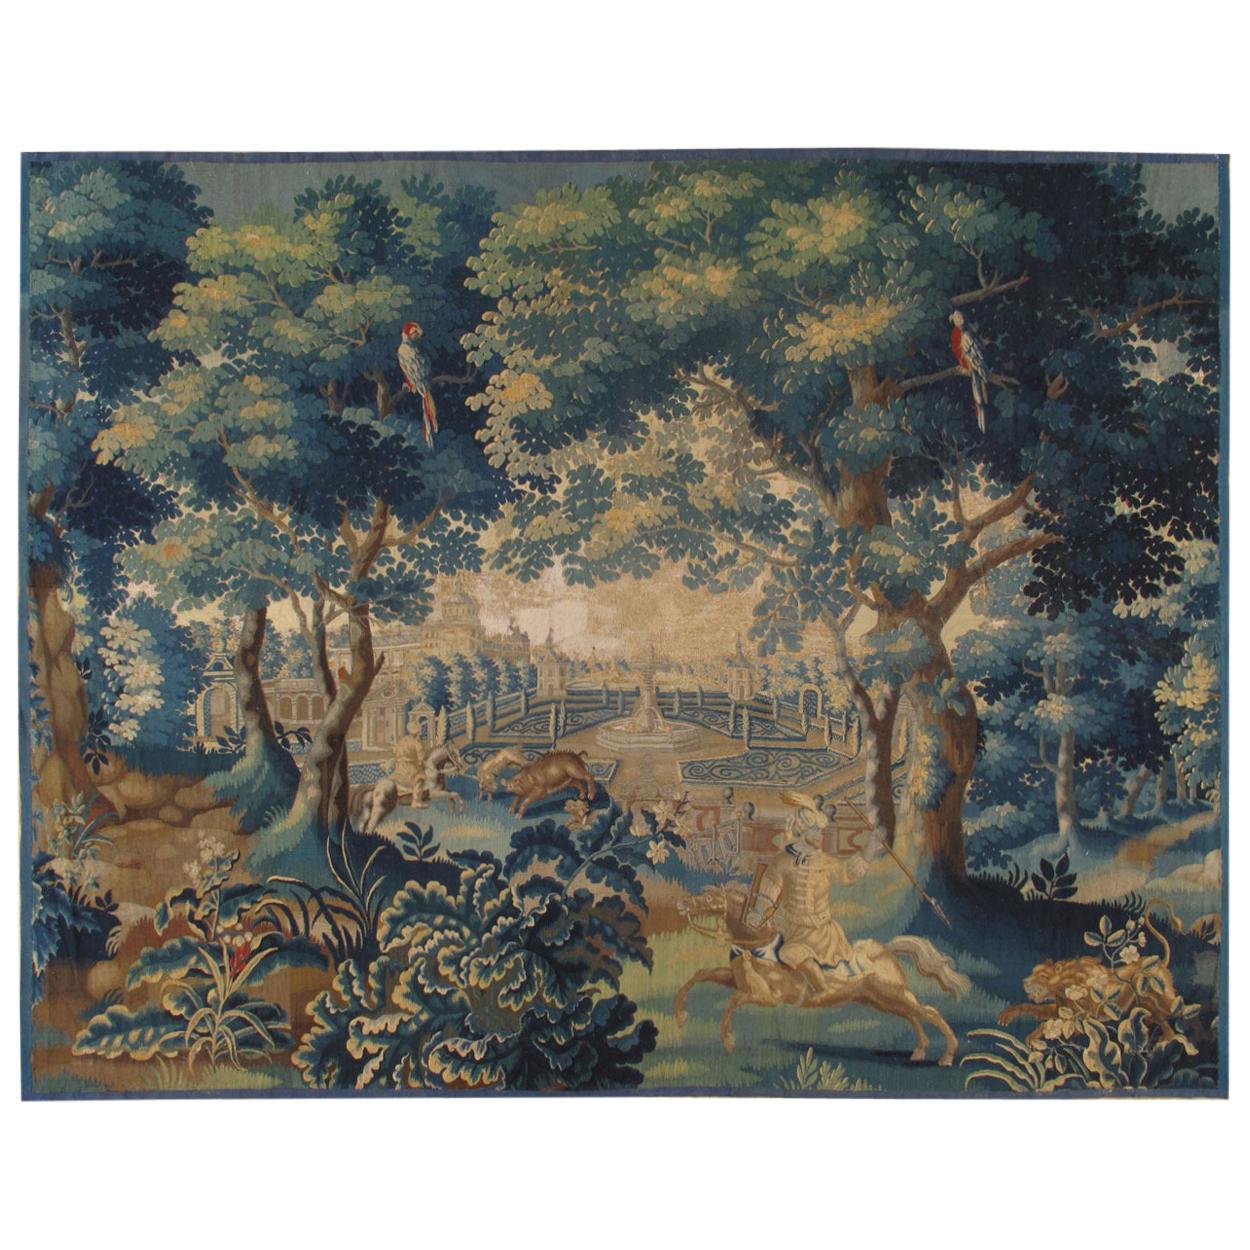 Feiner Brüsseler Wandteppich aus dem 18. Jahrhundert, Seidenwolle, Grün, Blau, mythologisches Thema